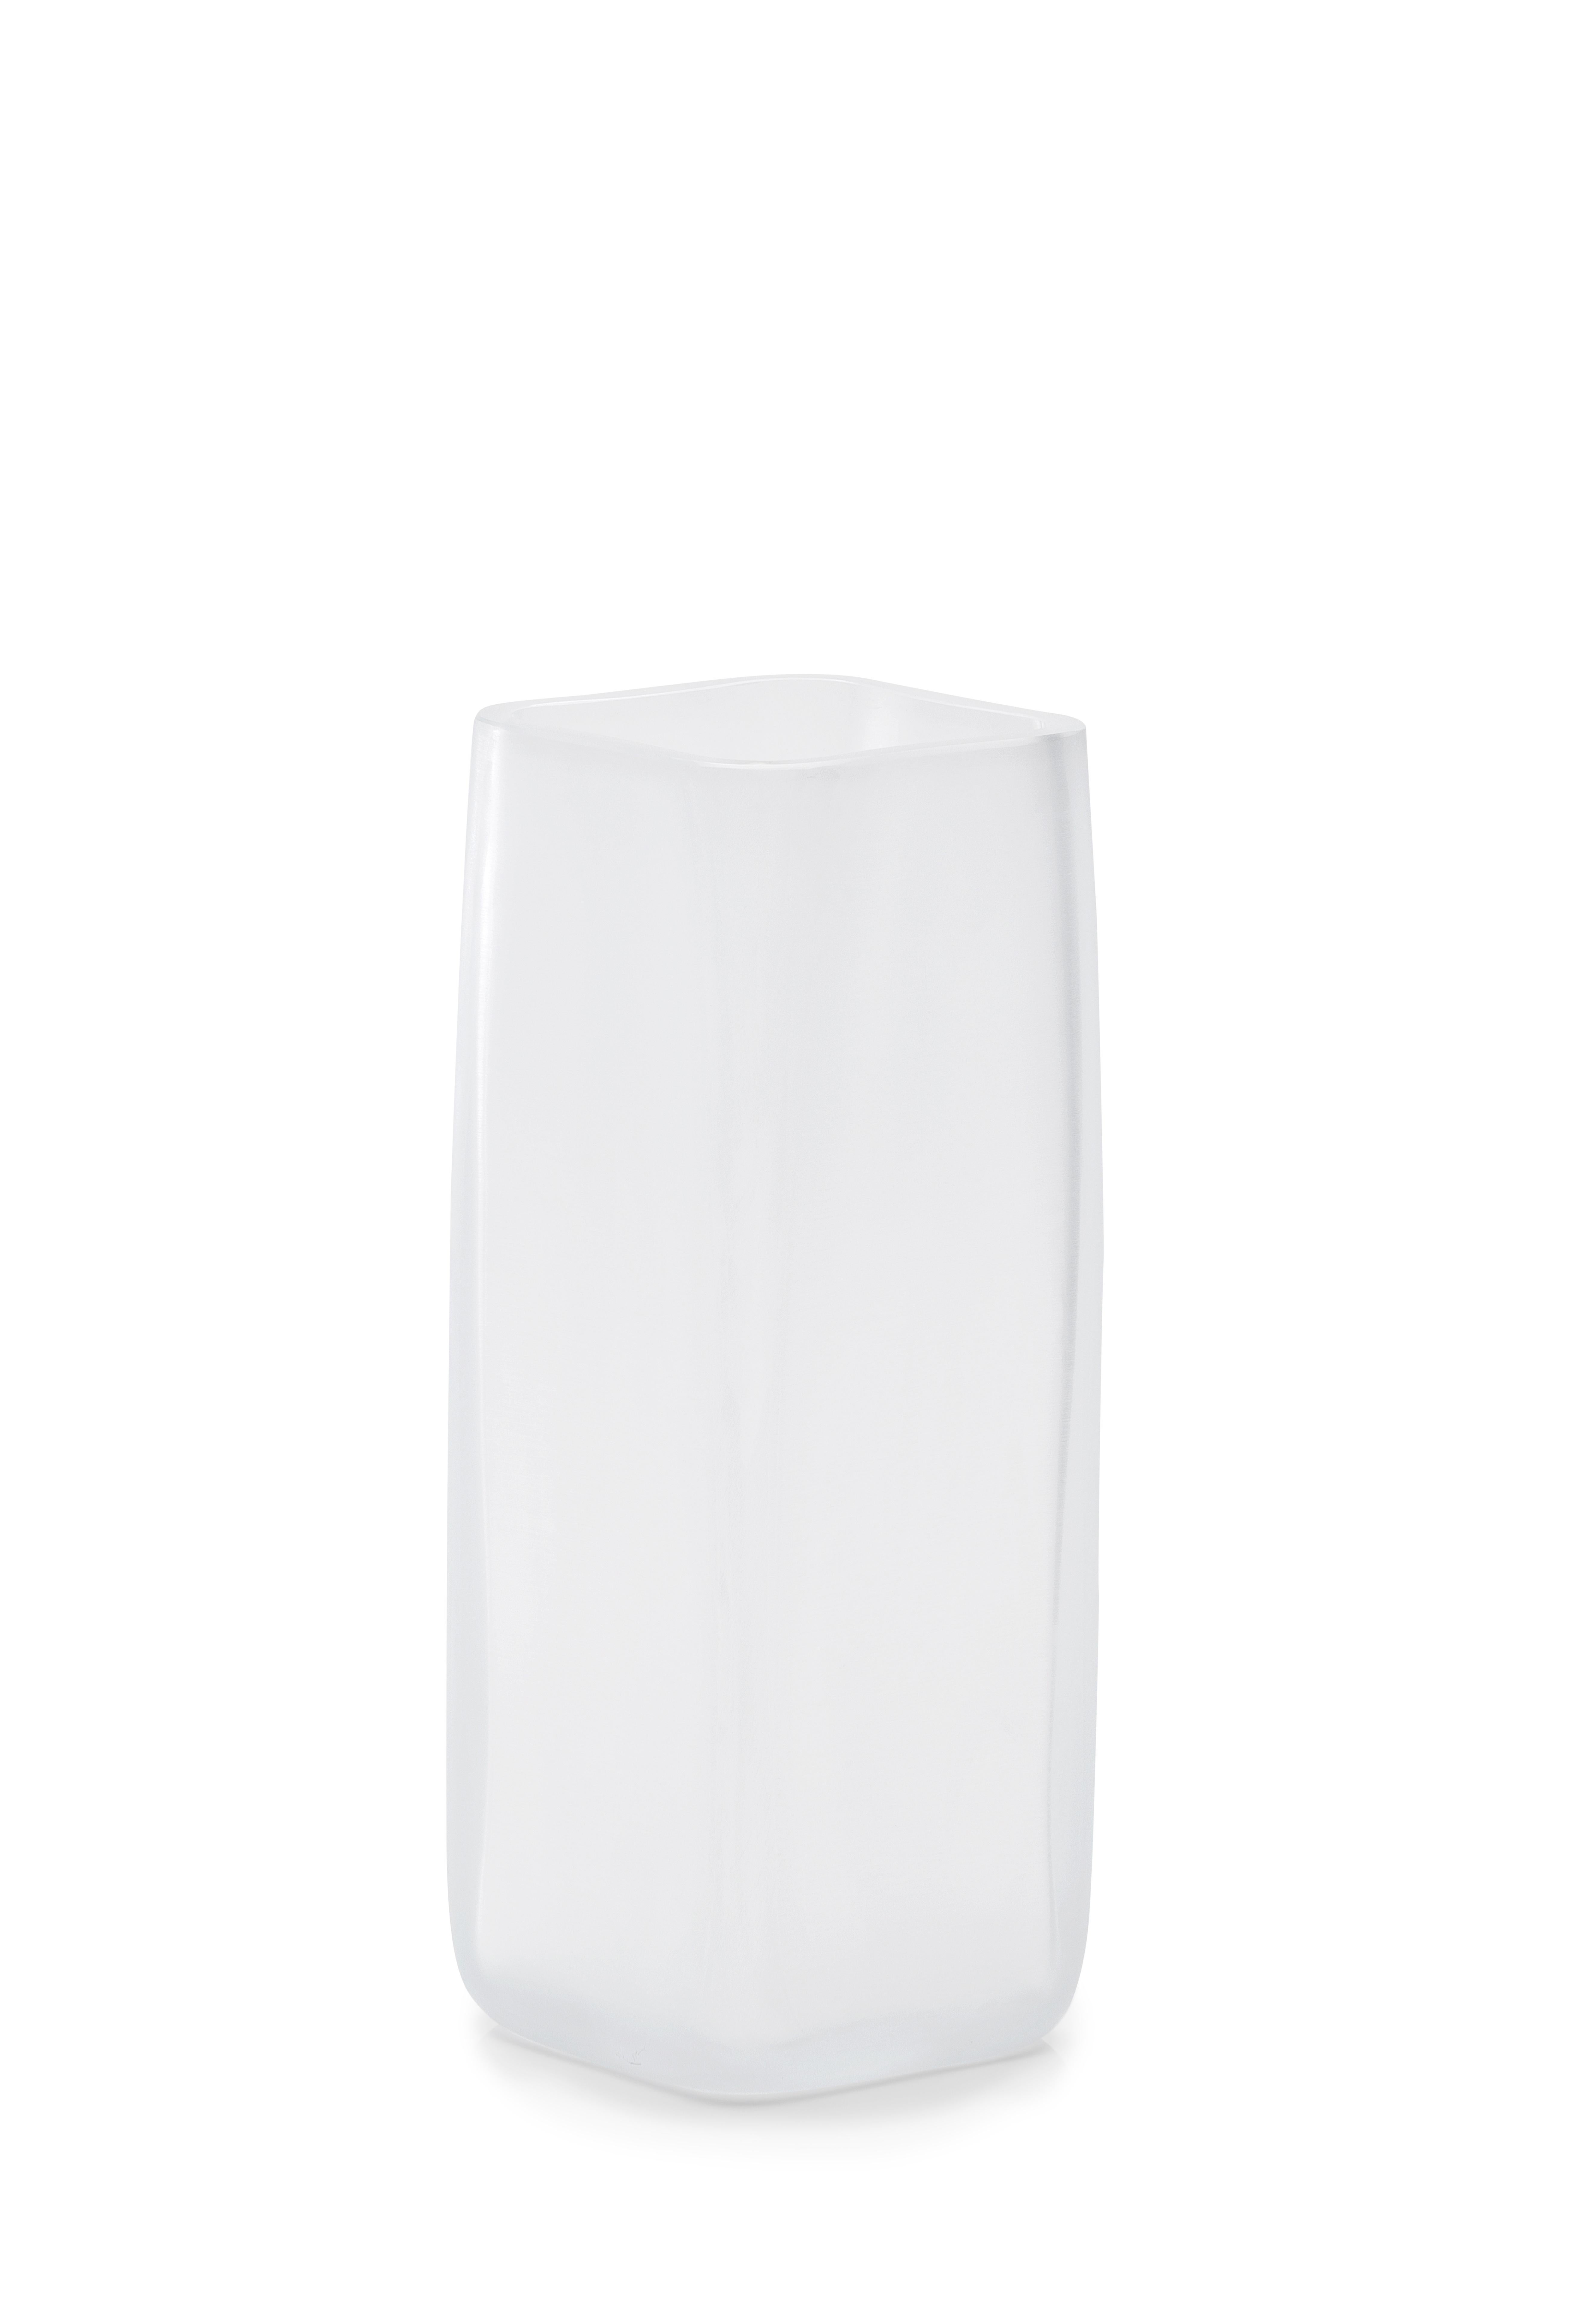 vase LPWK CUBES du 21ème siècle. Verre de Murano dépoli de différentes couleurs.
Conçue par LPWK, Cubes est une collection comprenant des bols, des miniconteneurs et un vase en verre de Murano dépoli, dans laquelle les lignes - expressément